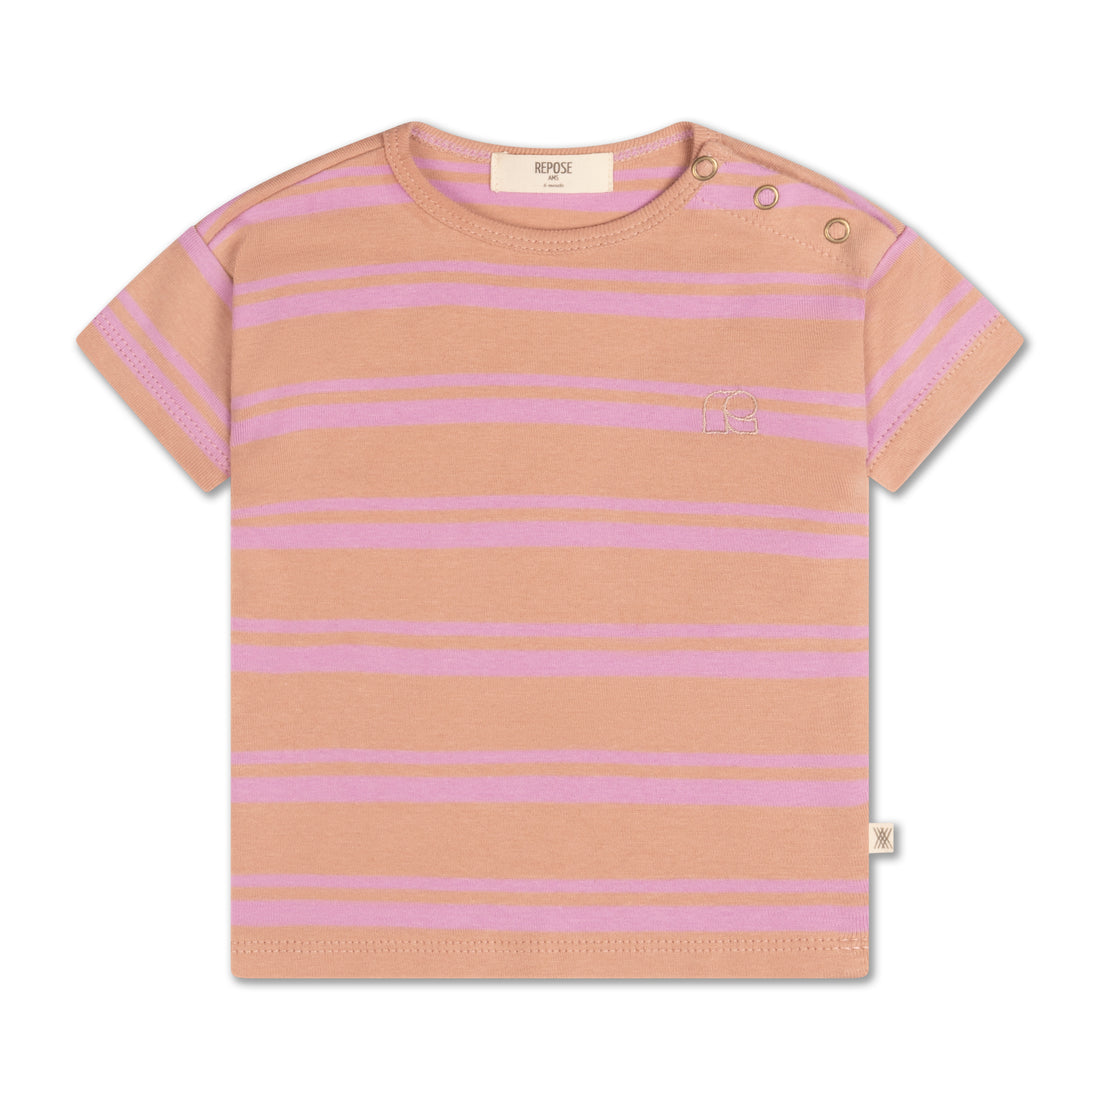 Repose ams - Tshirt powder violet stripes